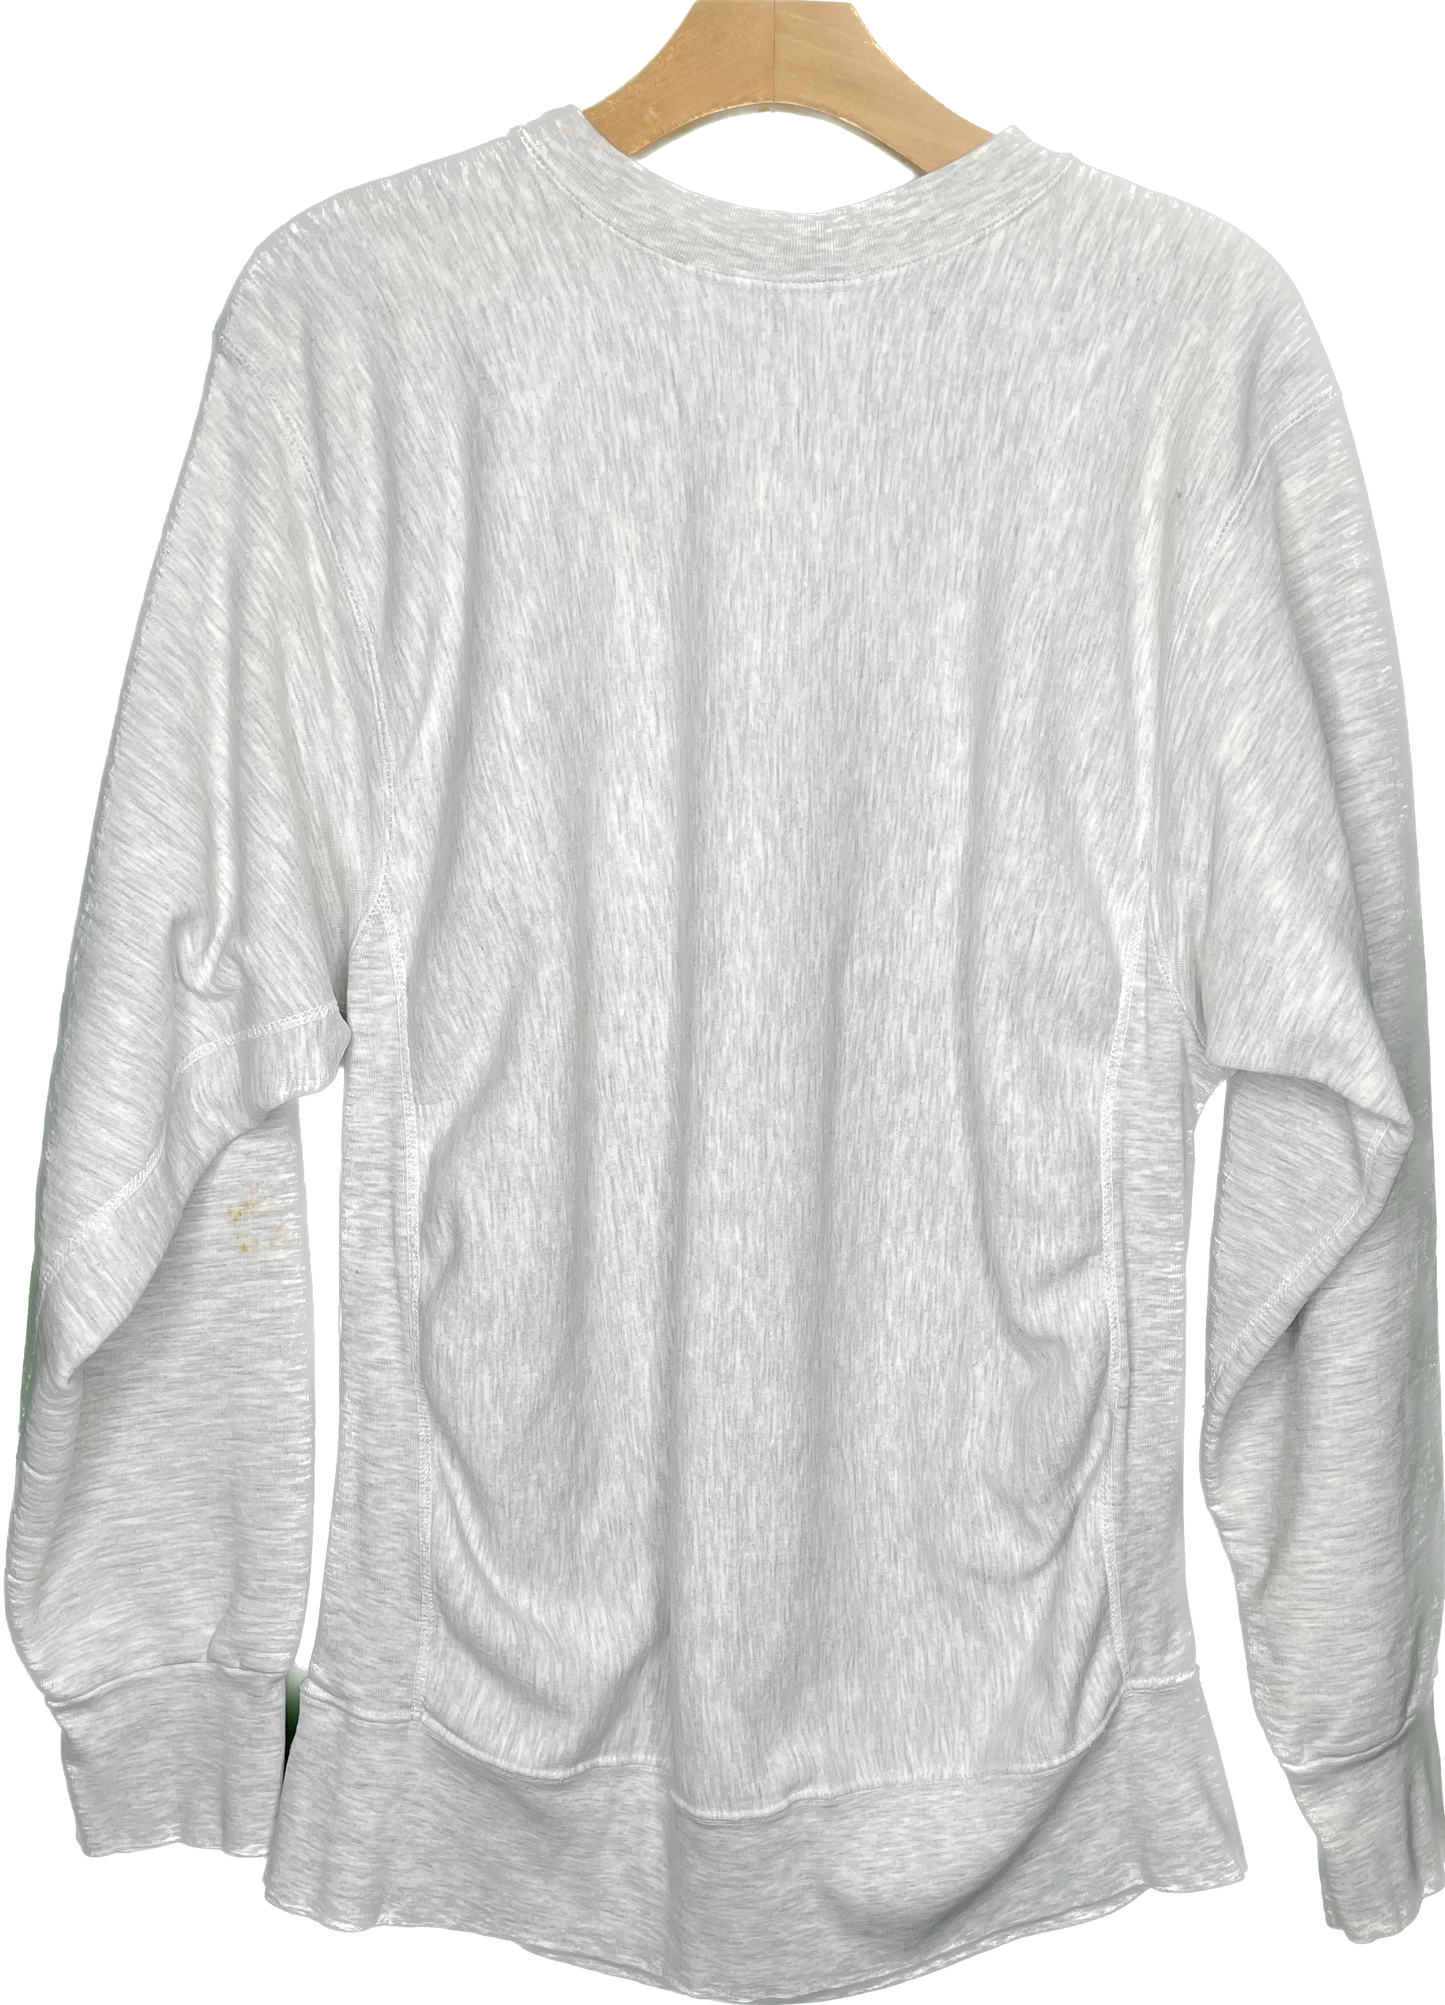 Vintage M/L Western Illinois College Crewneck Sweatshirt